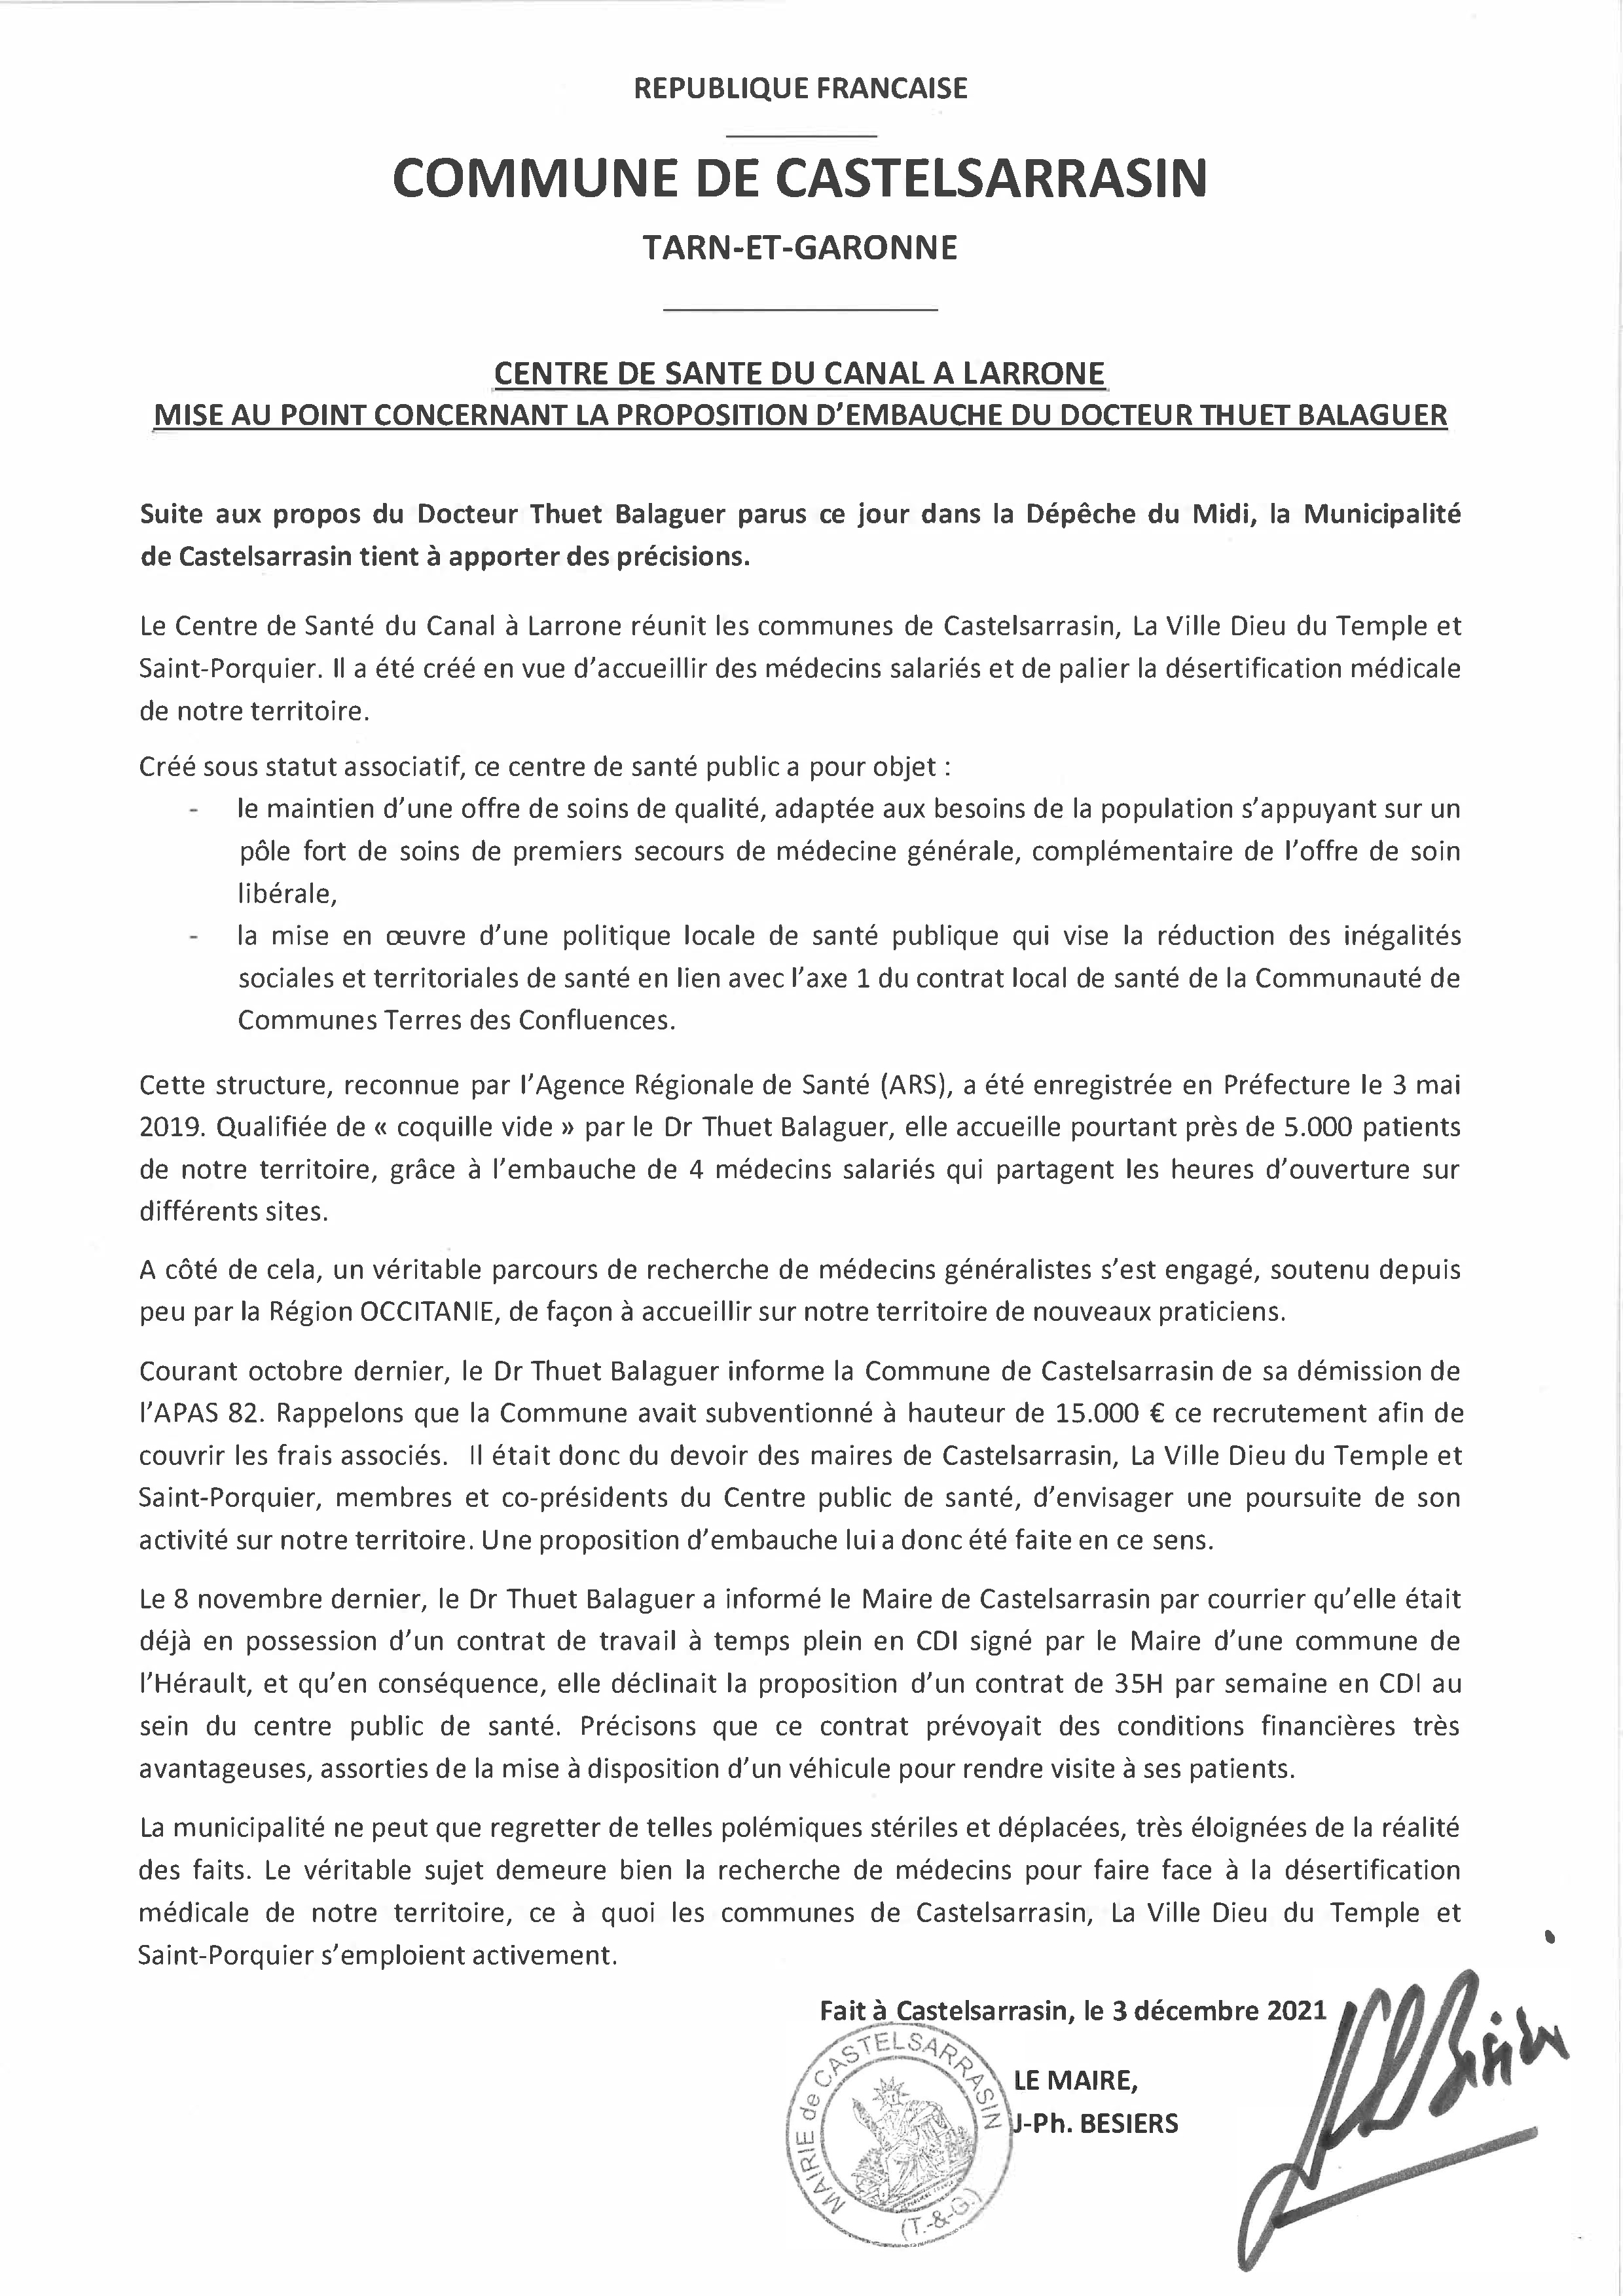 Communiqué de la ville de Castelsarrasin au sujet du centre de santé et de l'embauche du docteur Balaguer